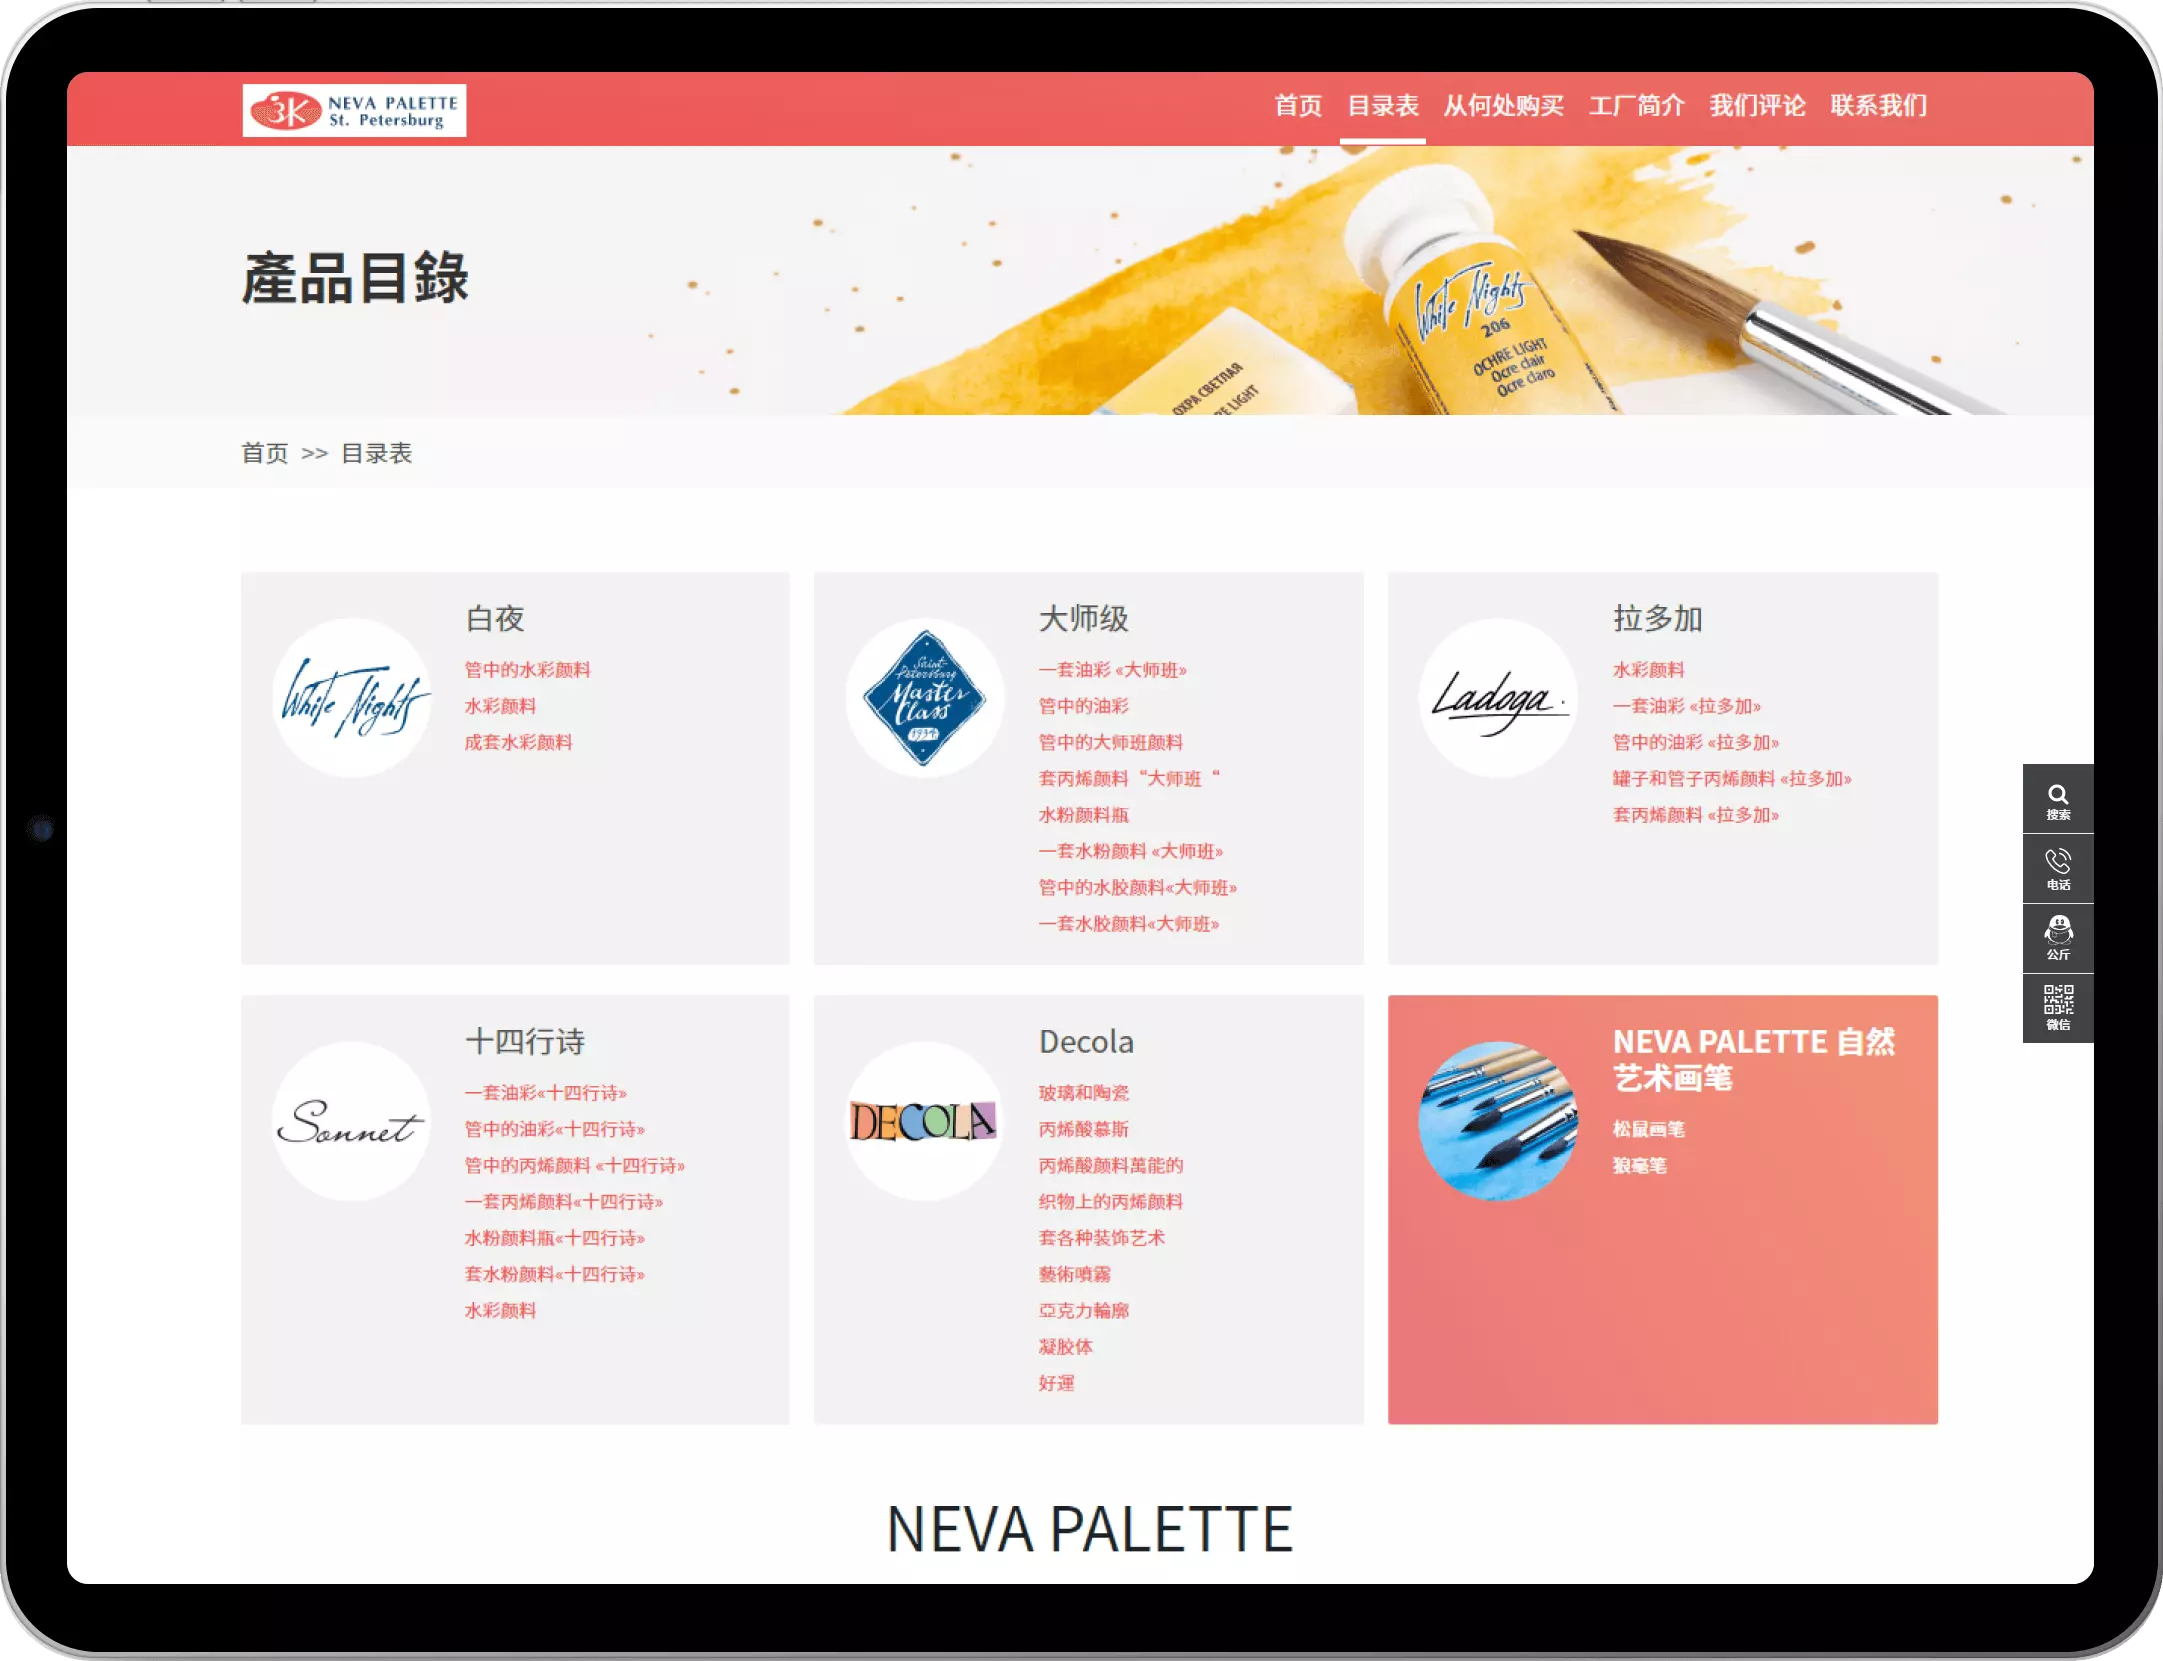 neva palette website.